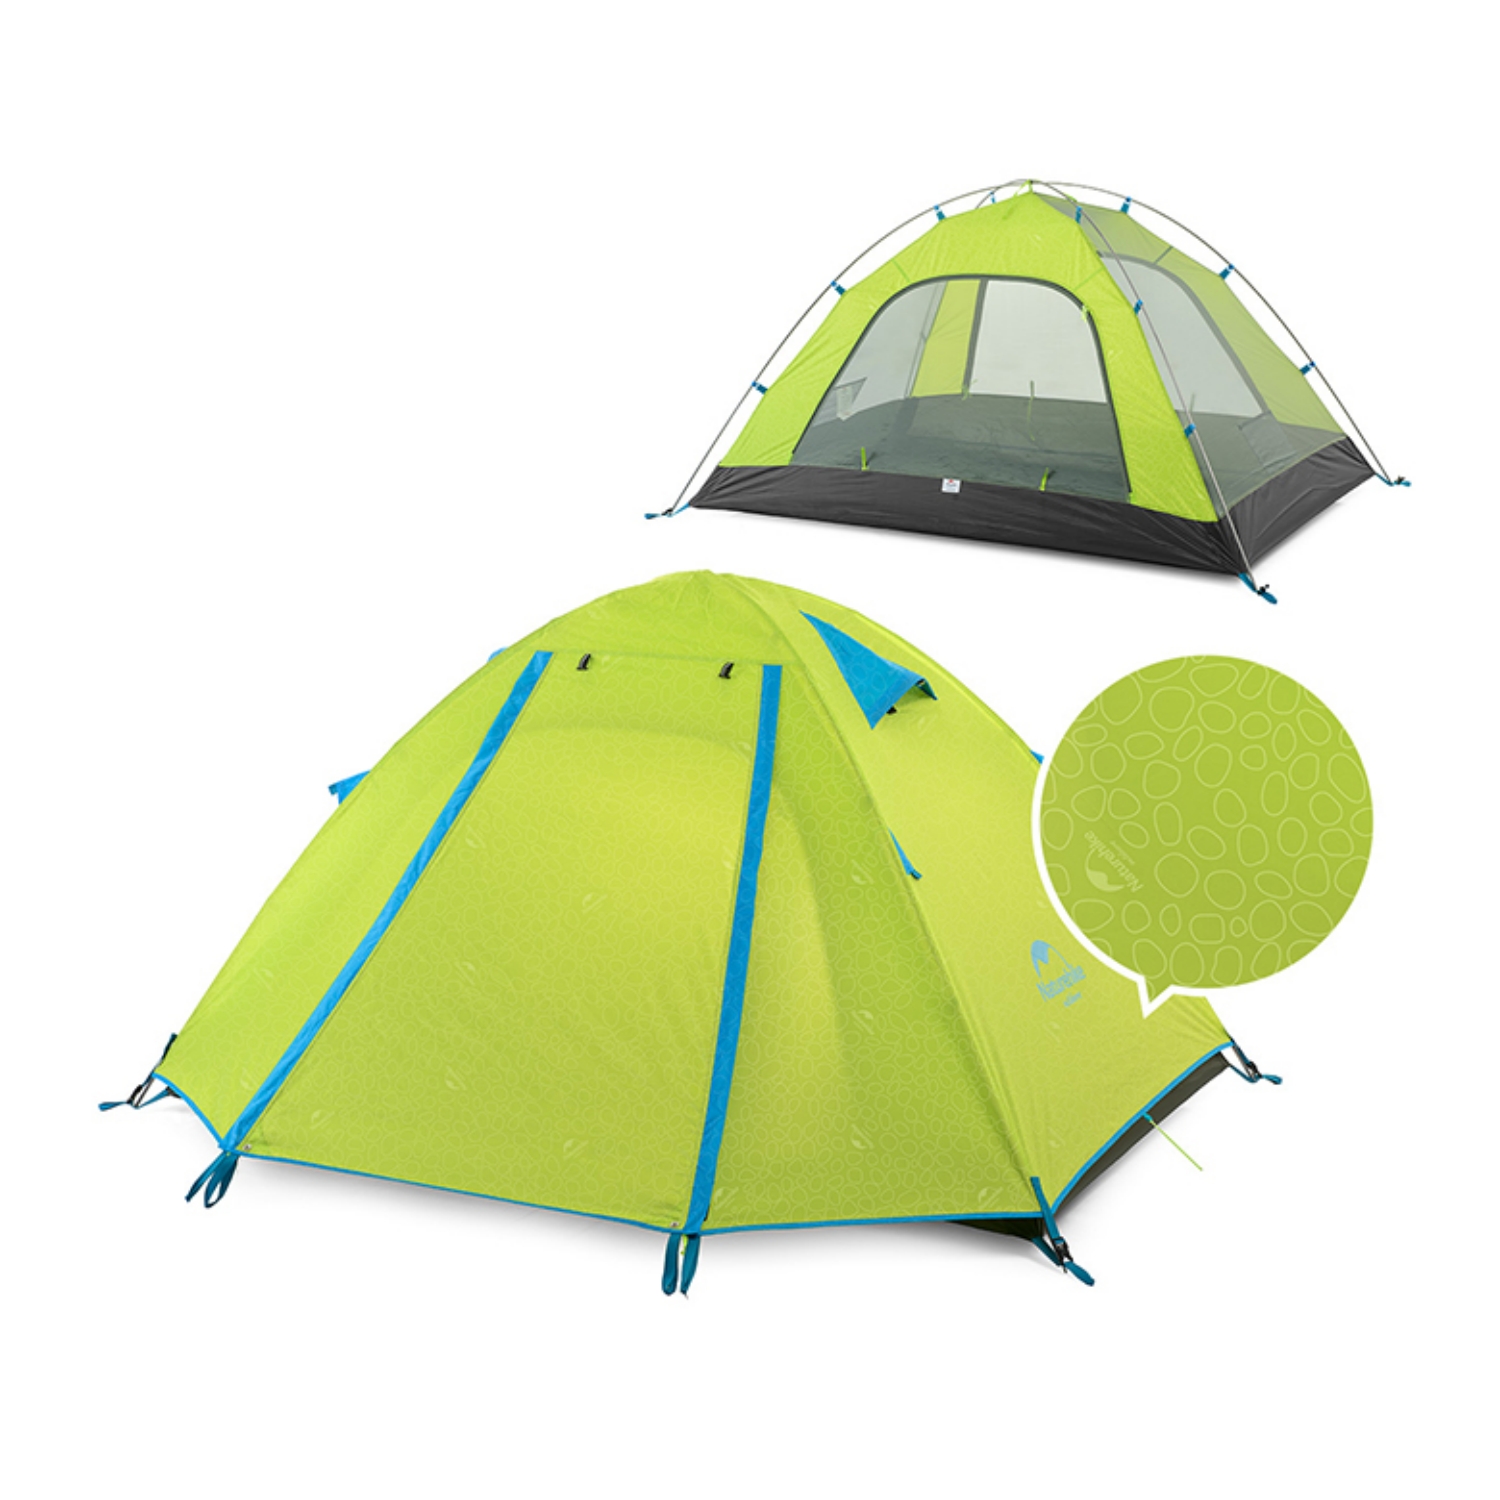 Naturehike Pキャンプ2人用テントドームテント 2~3人用 UPF50+ 耐水圧2000mm+ 二重層 設営簡単 コンパクト